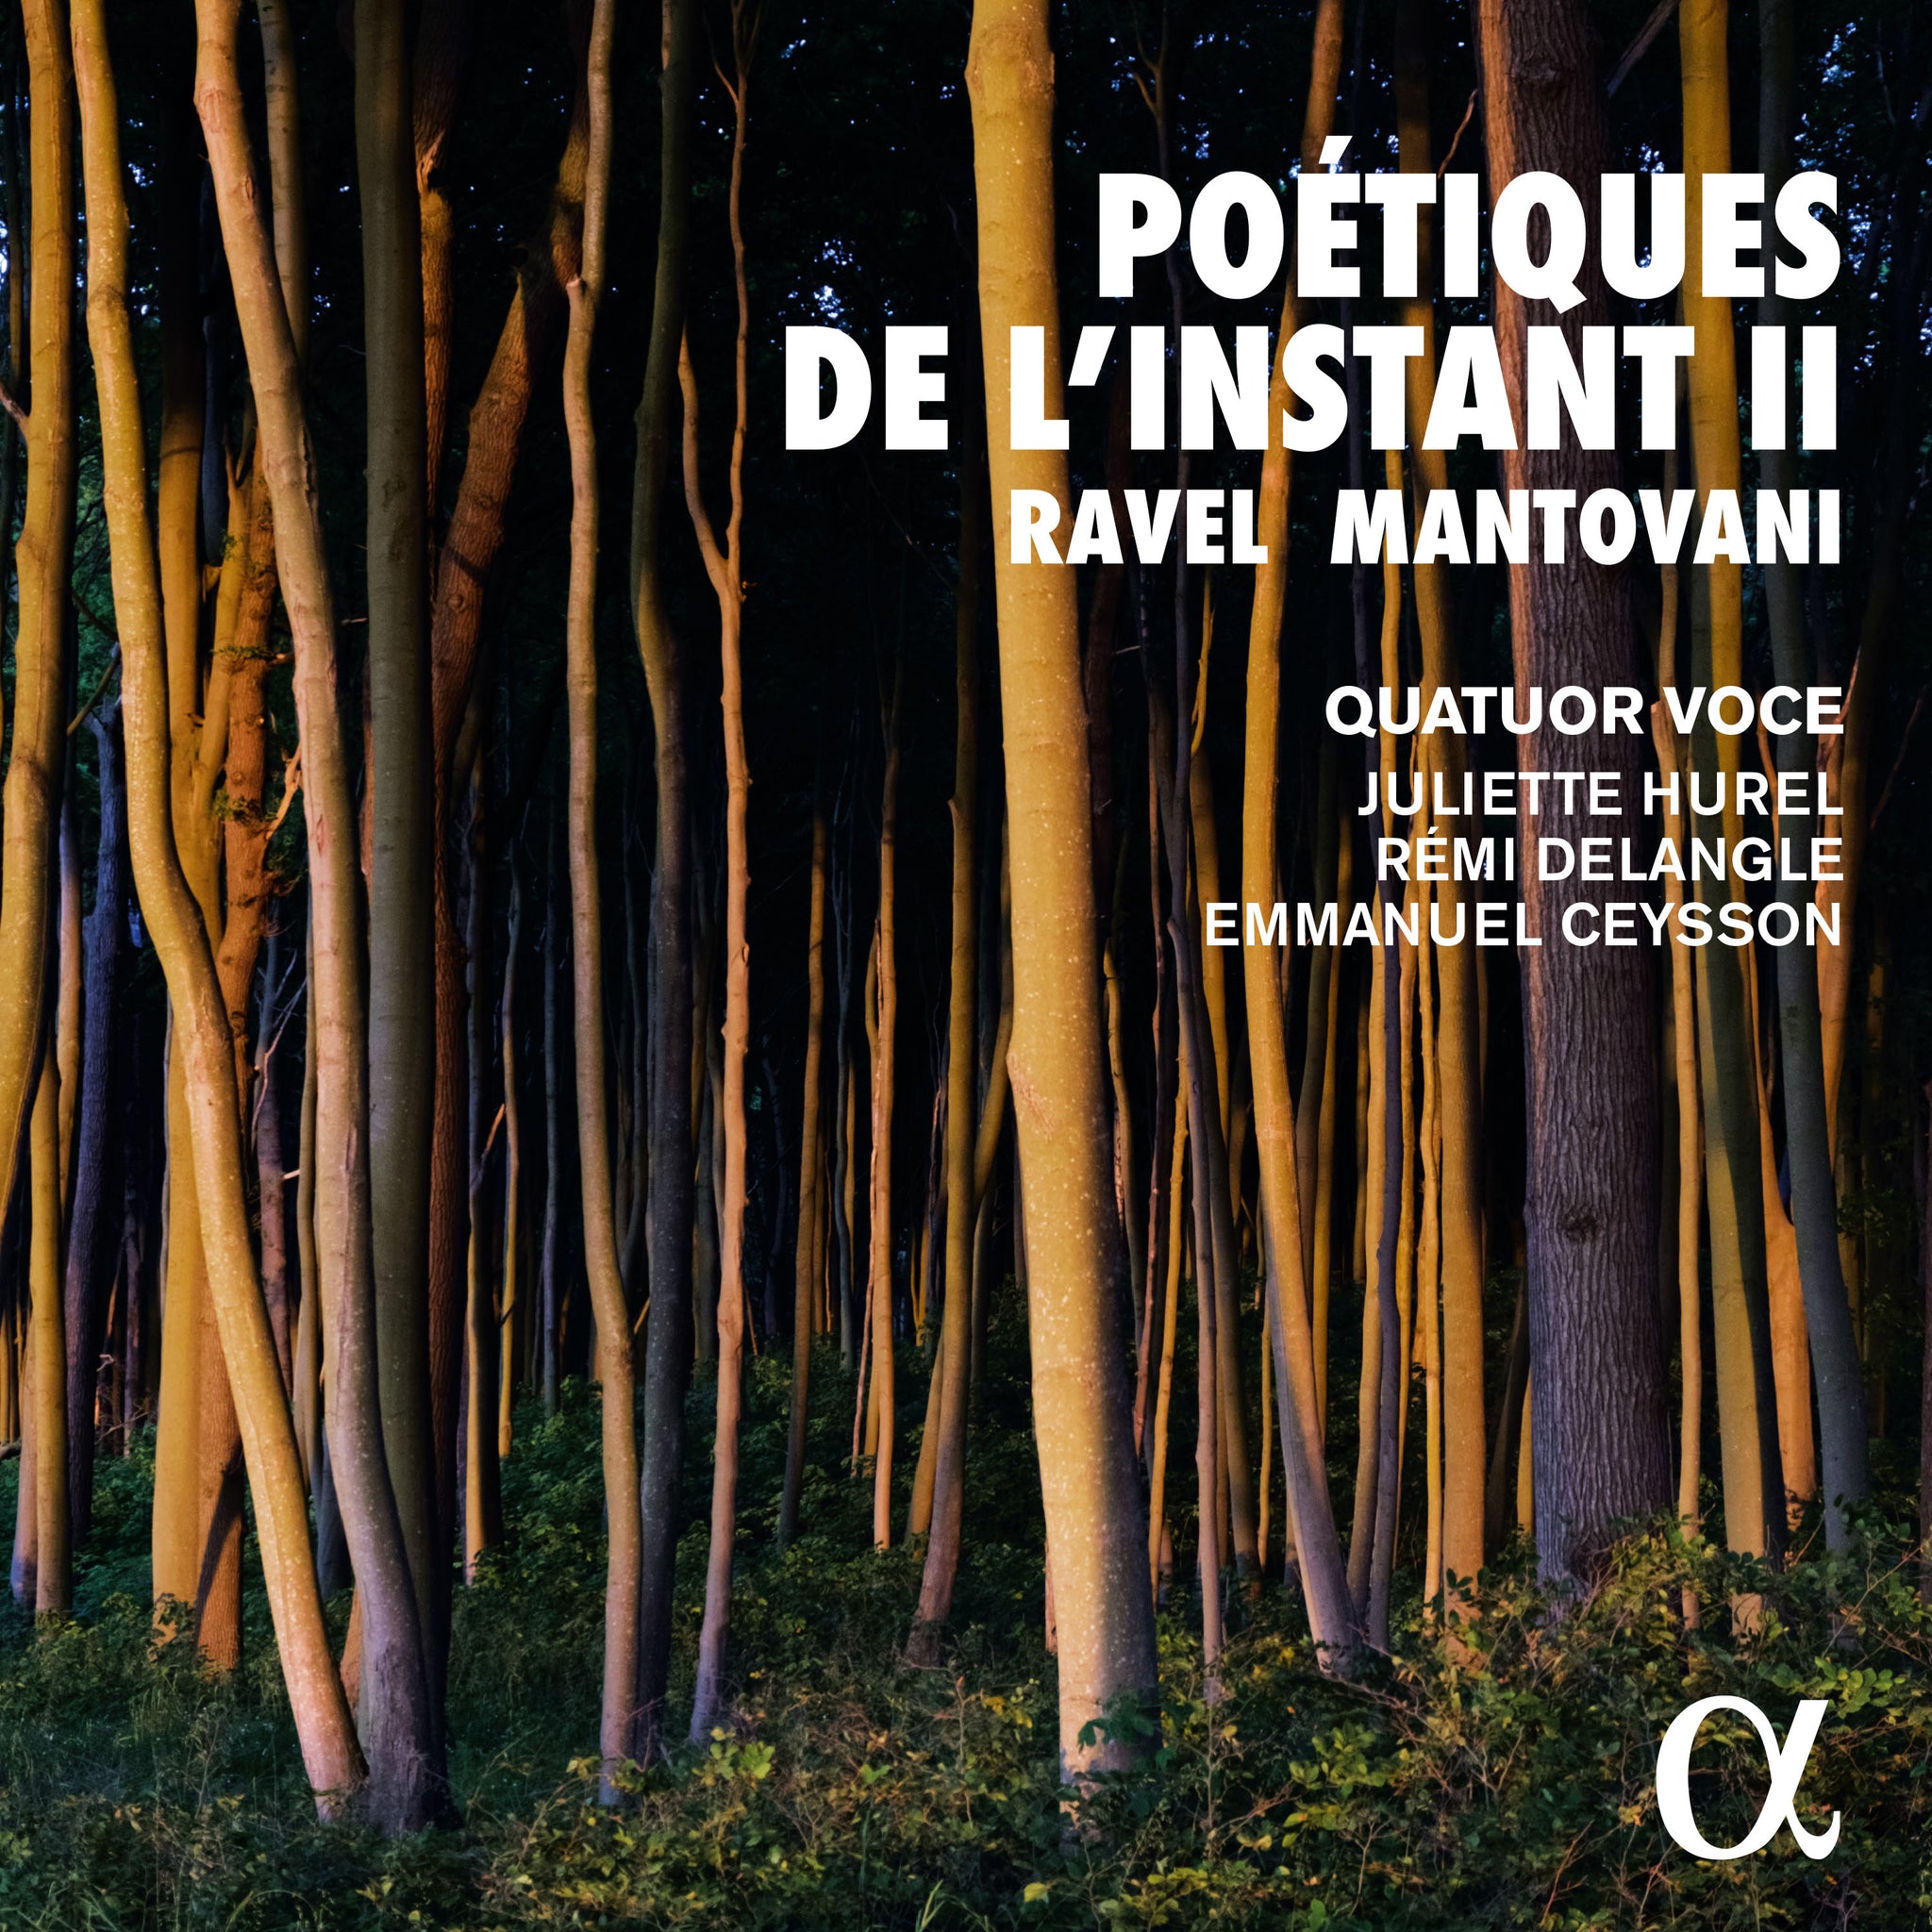 Ravel & B. Mantovani: Poétiques de l’Instant Vol. II / Hurel, Dalangle, Ceysson, Voce Quartet